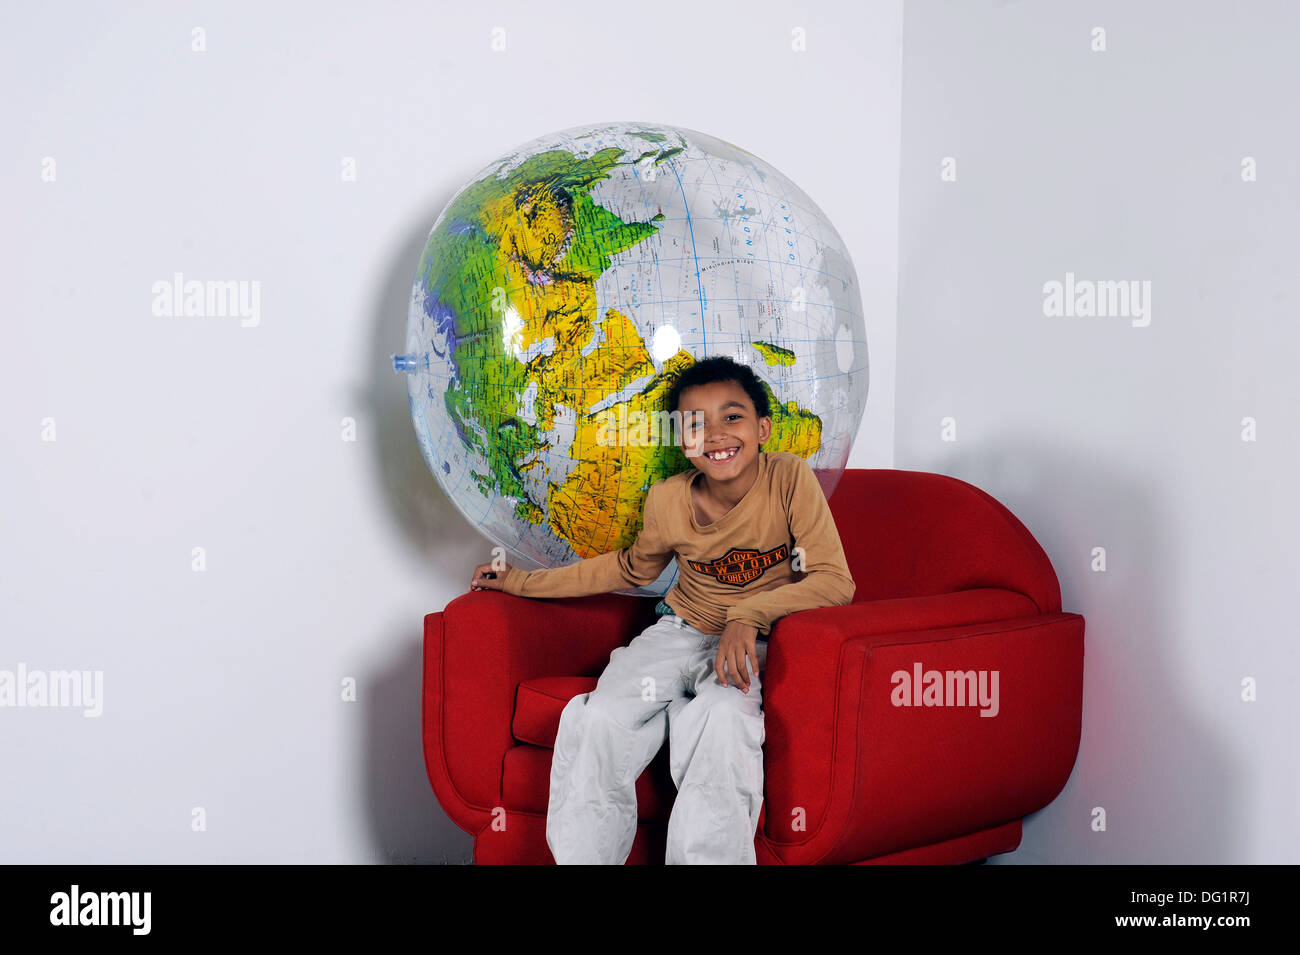 Jeune garçon souriant, assis avec un gros ballon globe derrière lui dans un fauteuil rouge Banque D'Images